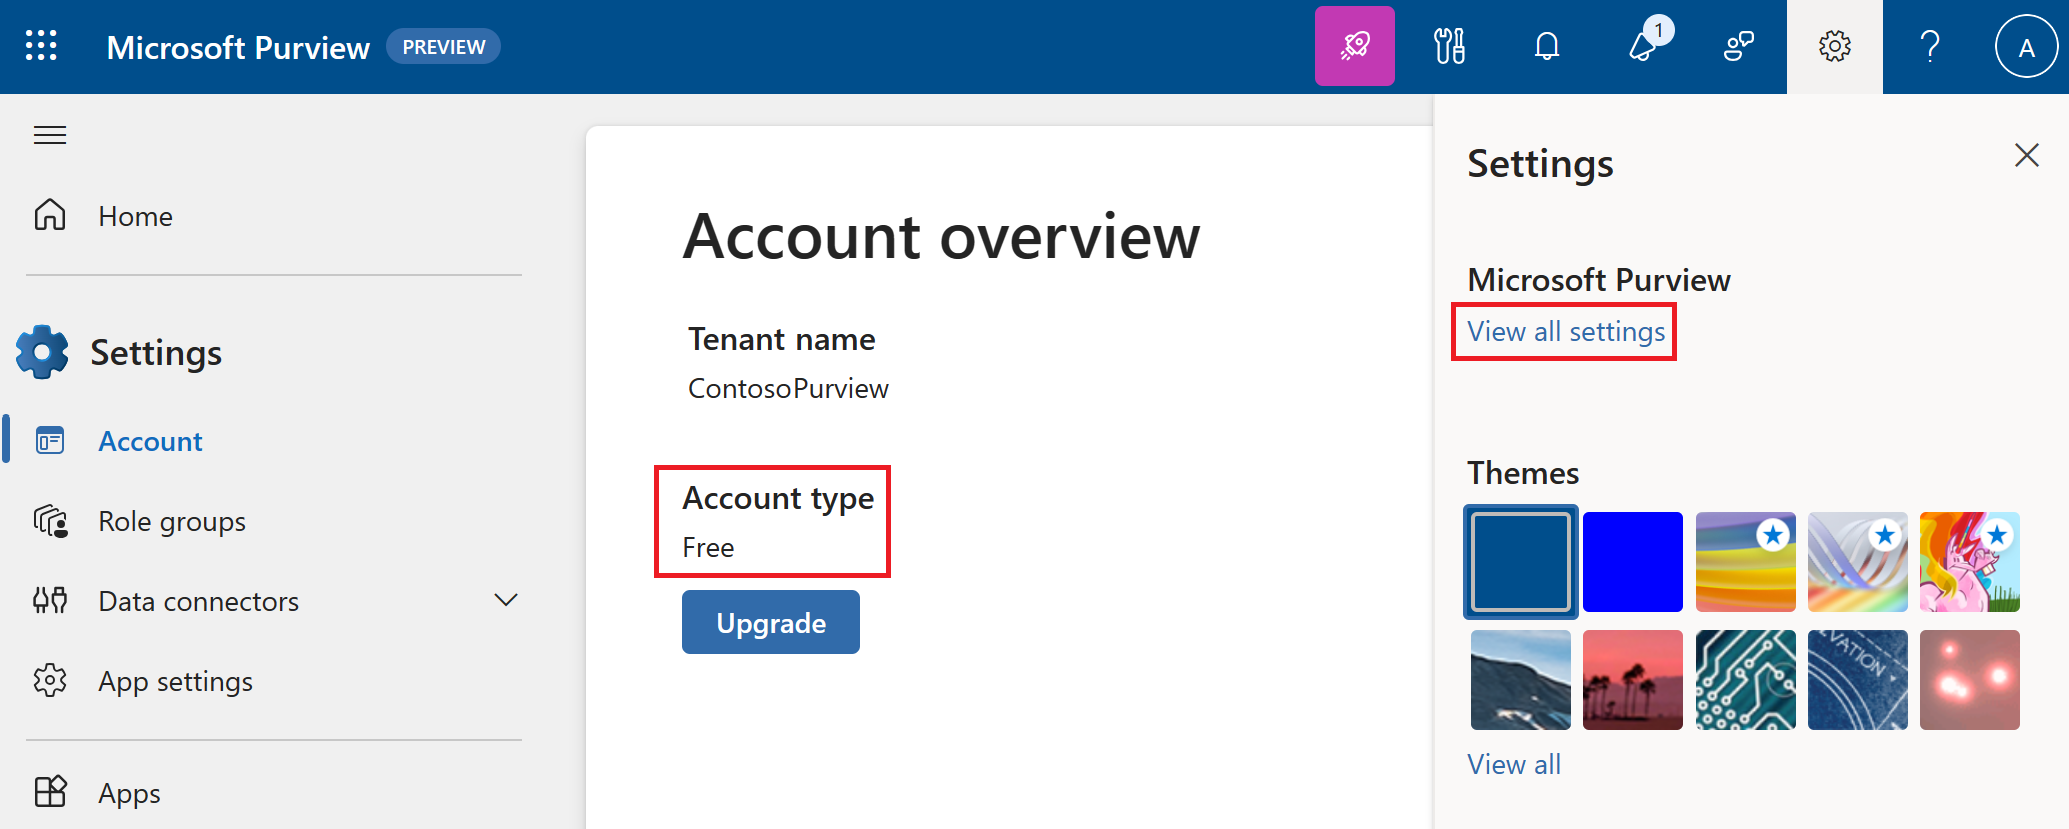 Captura de tela da página de configurações no portal do Microsoft Purview.